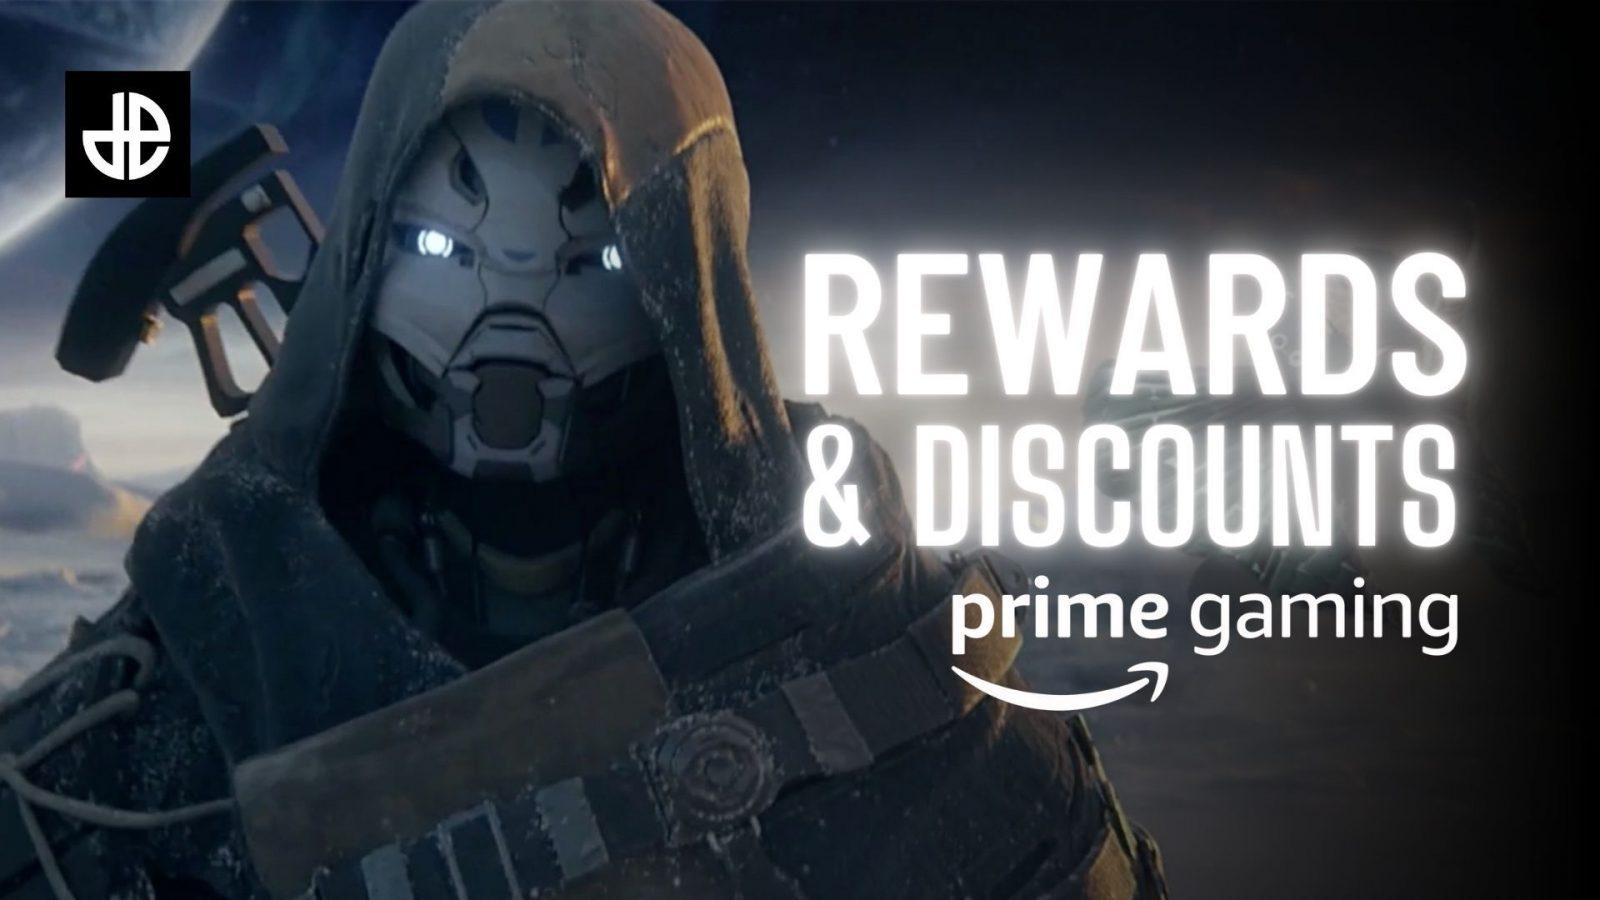 How to claim Destiny 2 Prime Gaming rewards (November 2023) - Dexerto